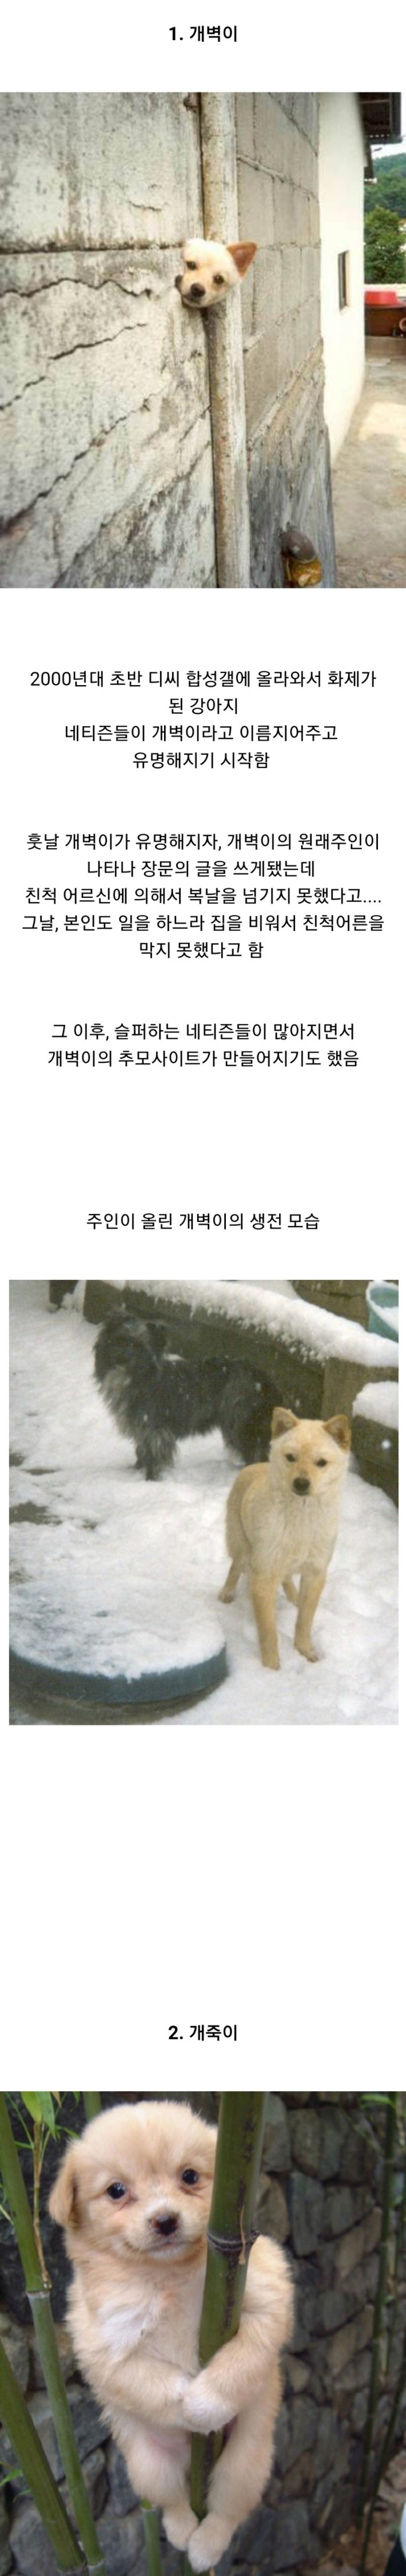 디씨에서 탄생한 3대 스타 강아지.jpg